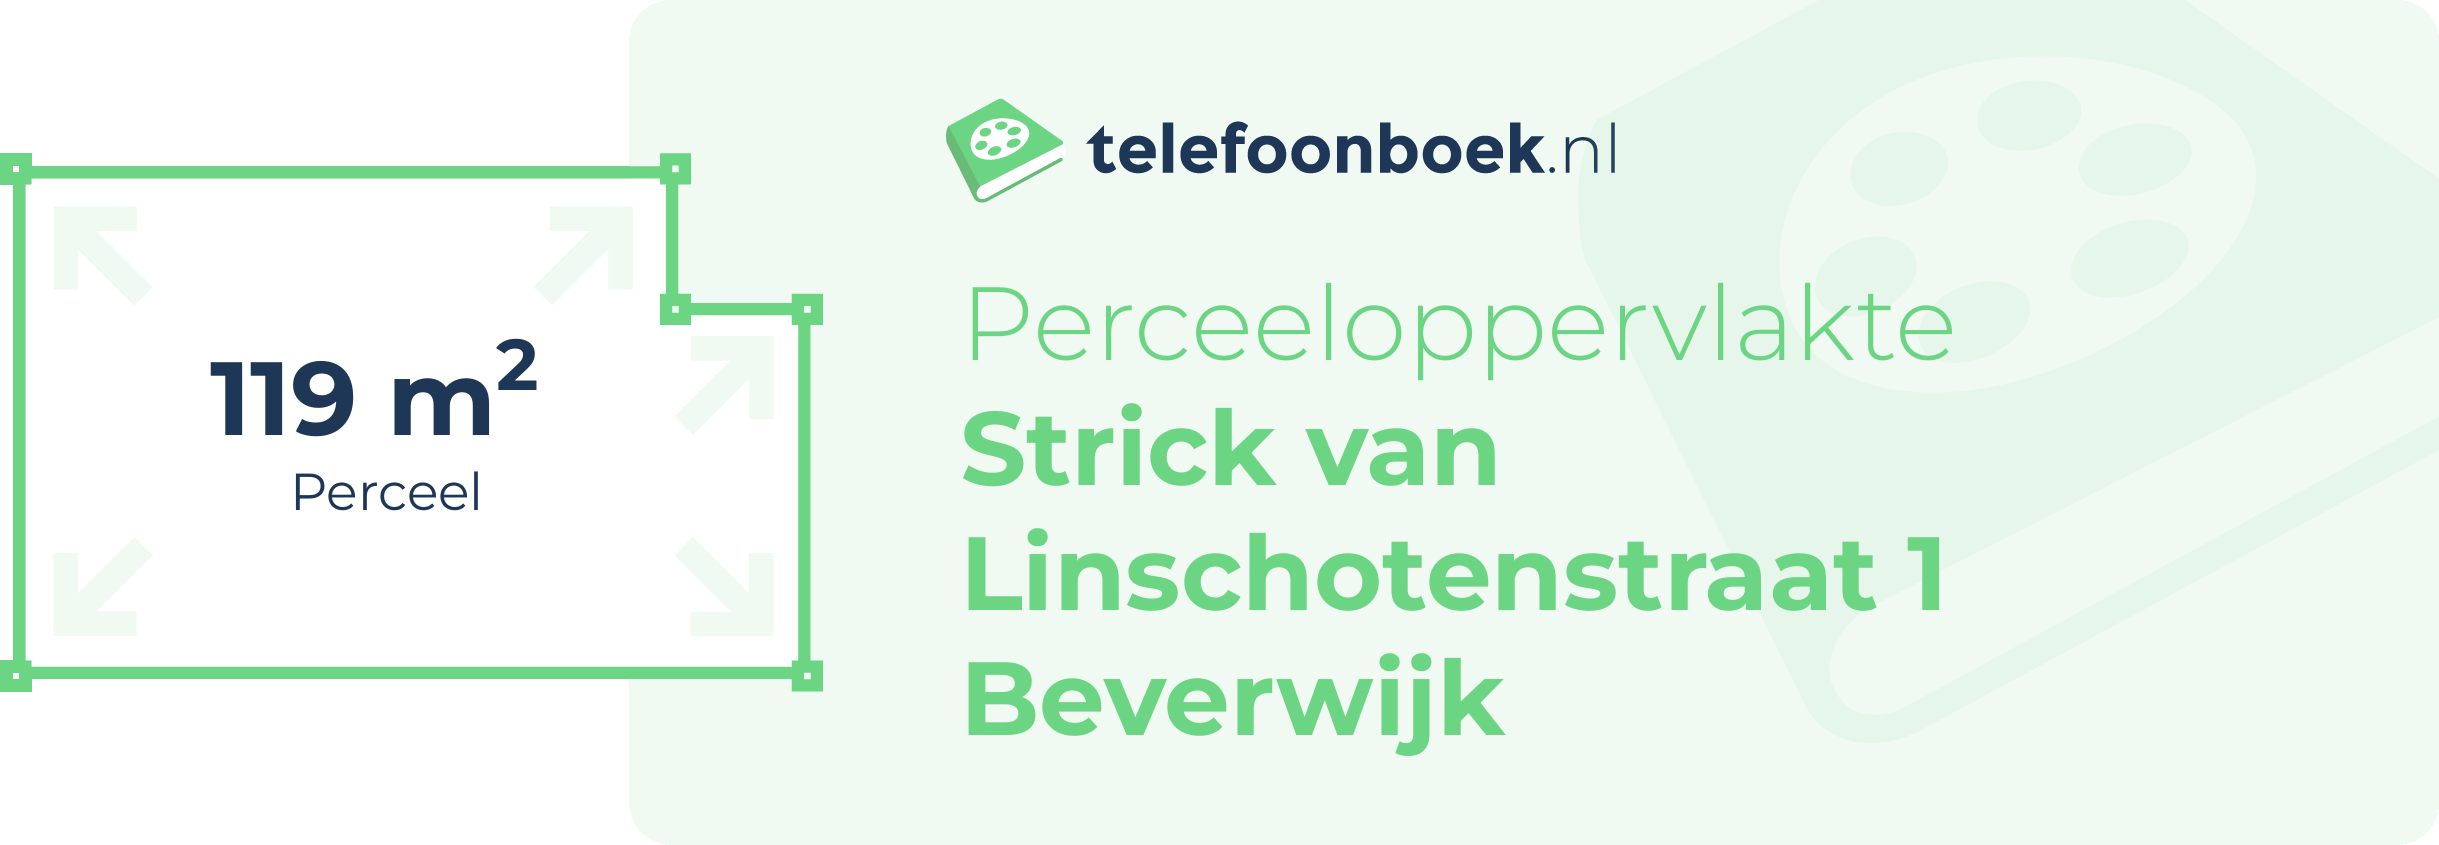 Perceeloppervlakte Strick Van Linschotenstraat 1 Beverwijk